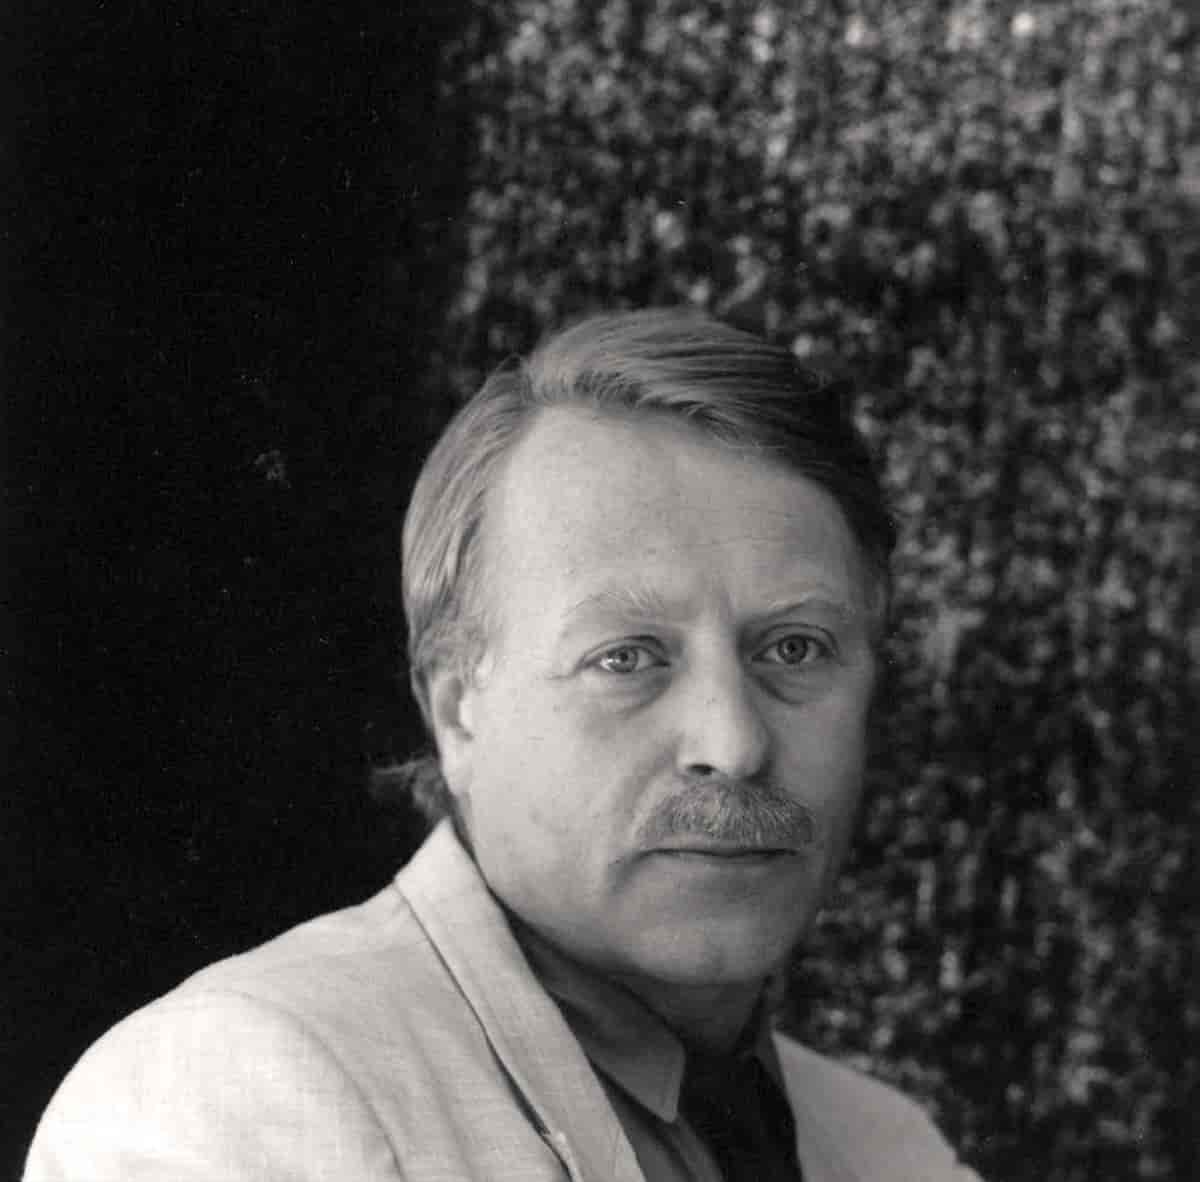 Paal-Helge Haugen